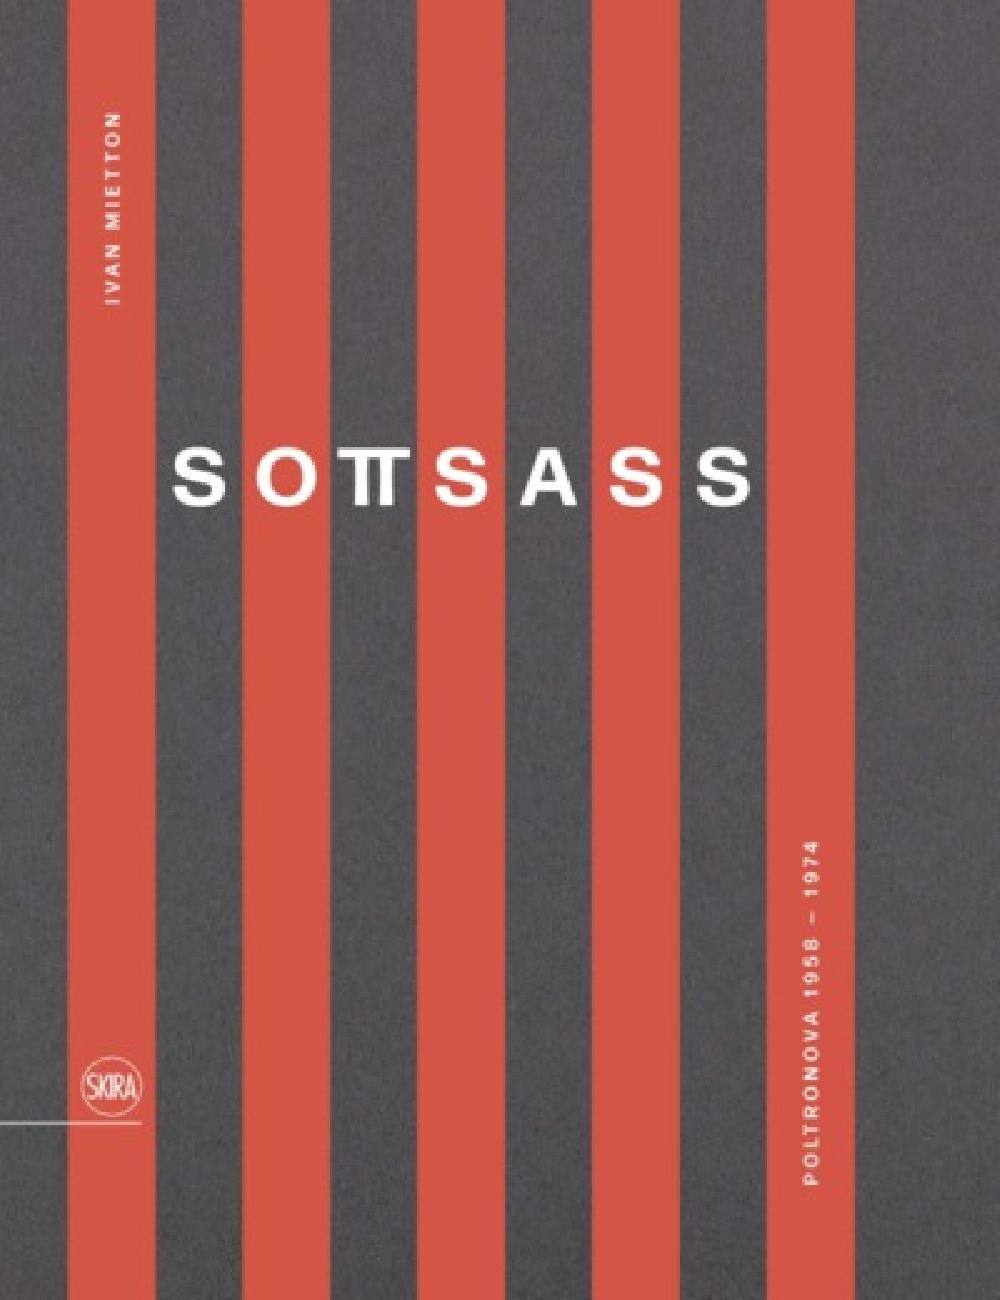 Sottsass - Poltronova 1958-1974